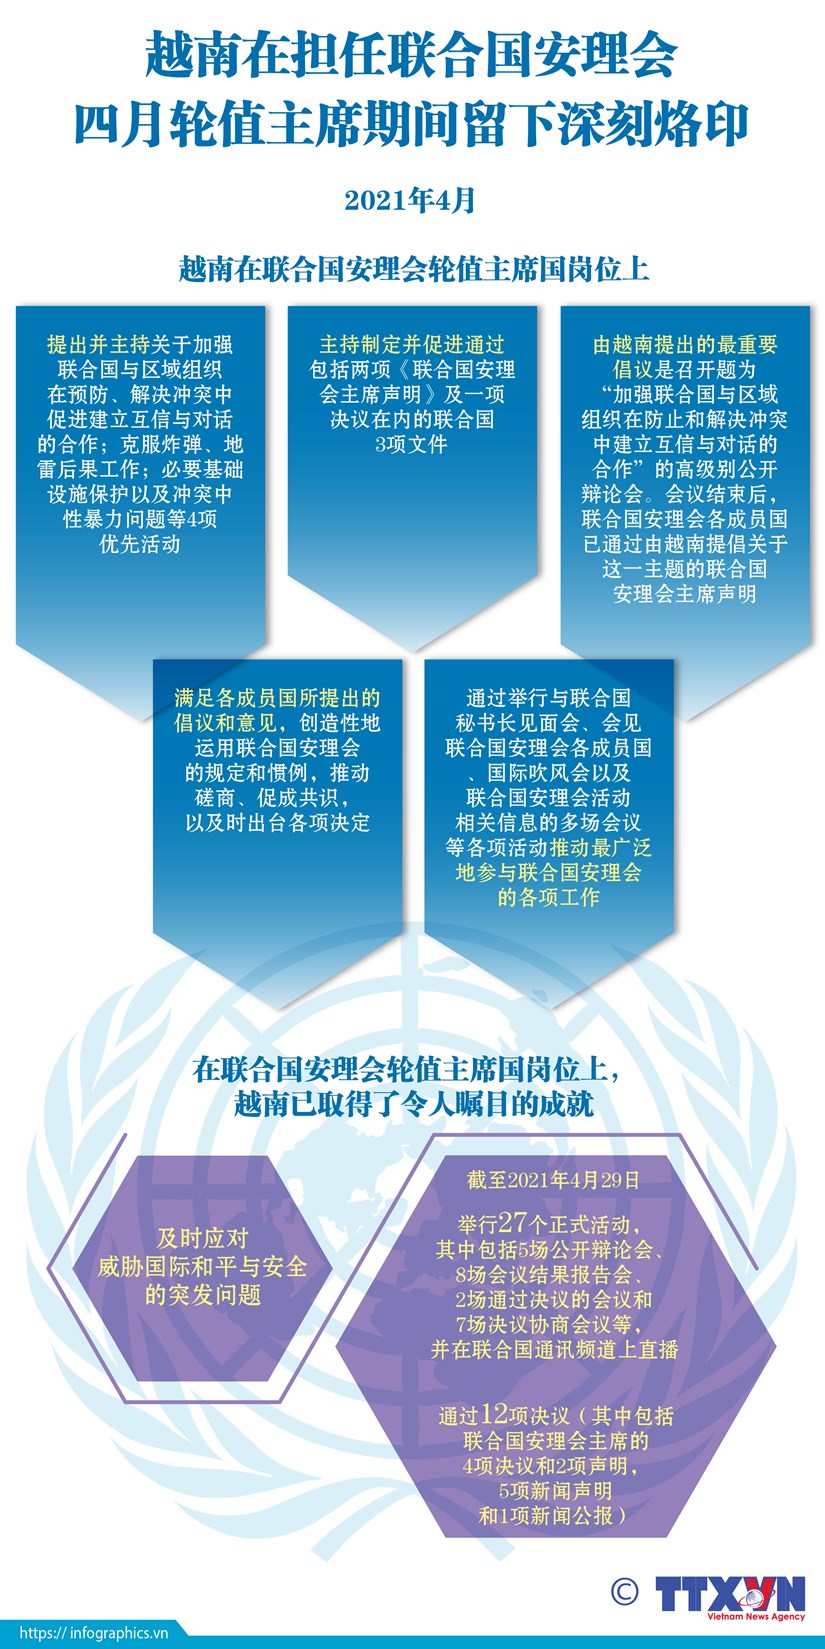 图表新闻：越南在担任联合国安理会四月轮值主席期间留下深刻烙印 hinh anh 1